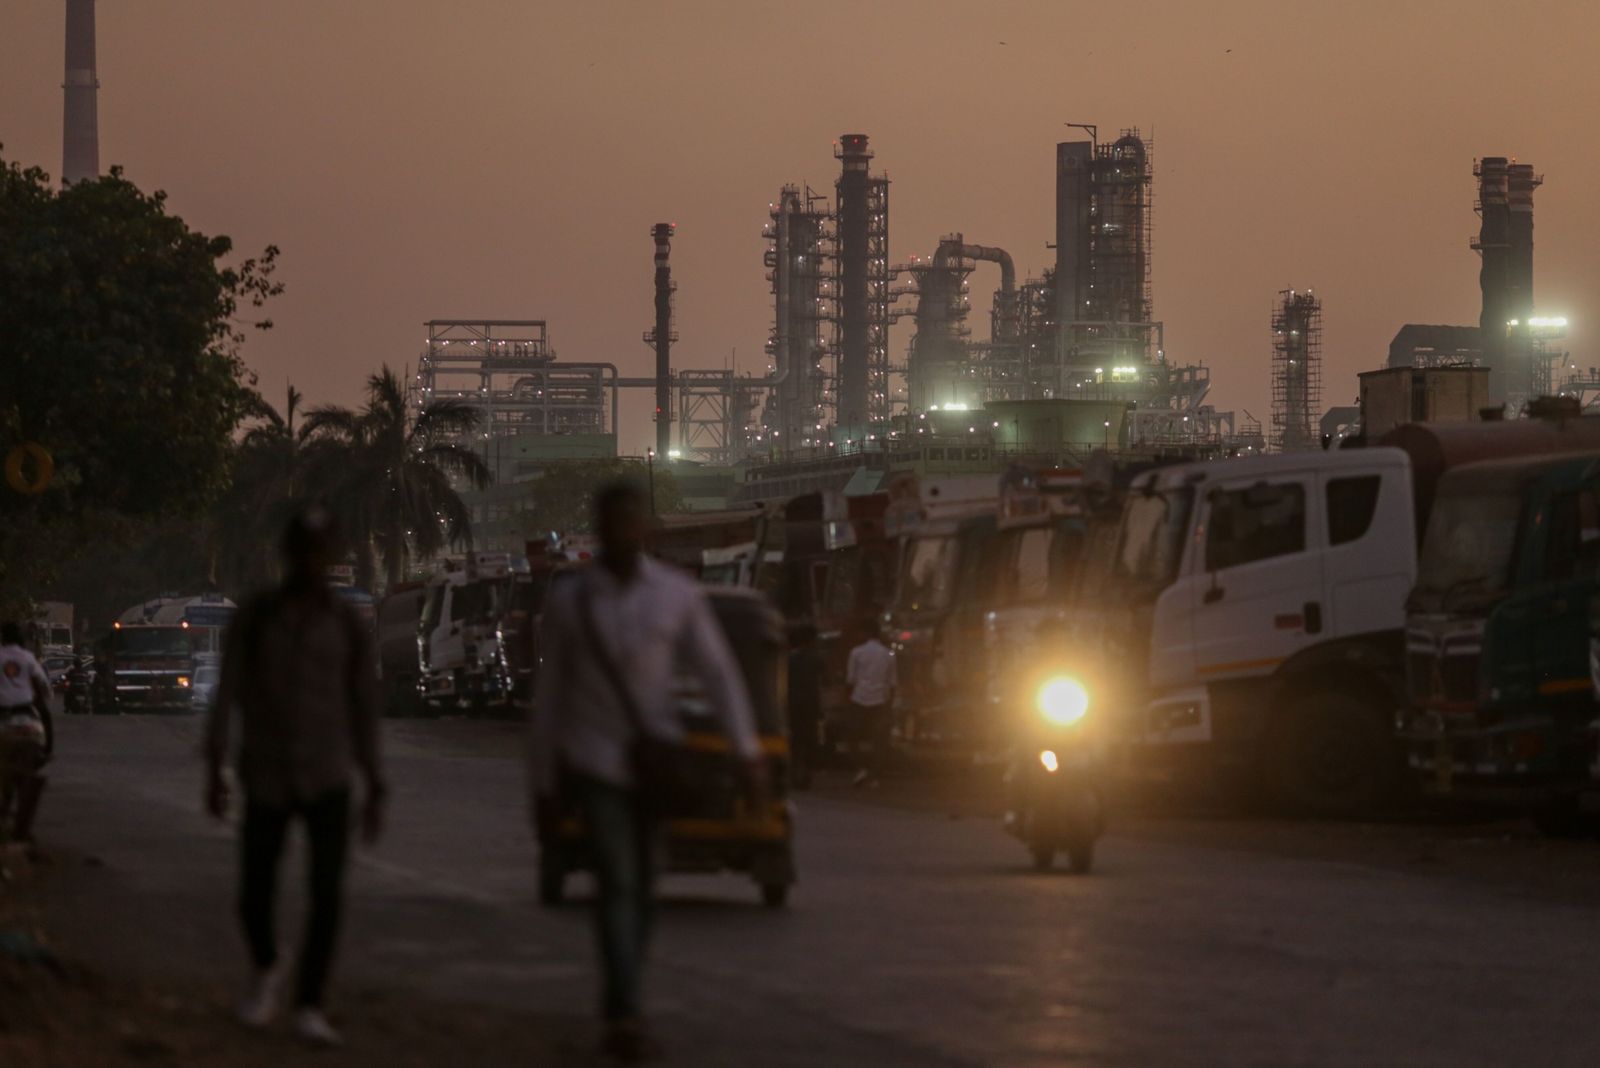 حذر هندي من شراء النفط الروسي وسط تشديد العقوبات الأميركية